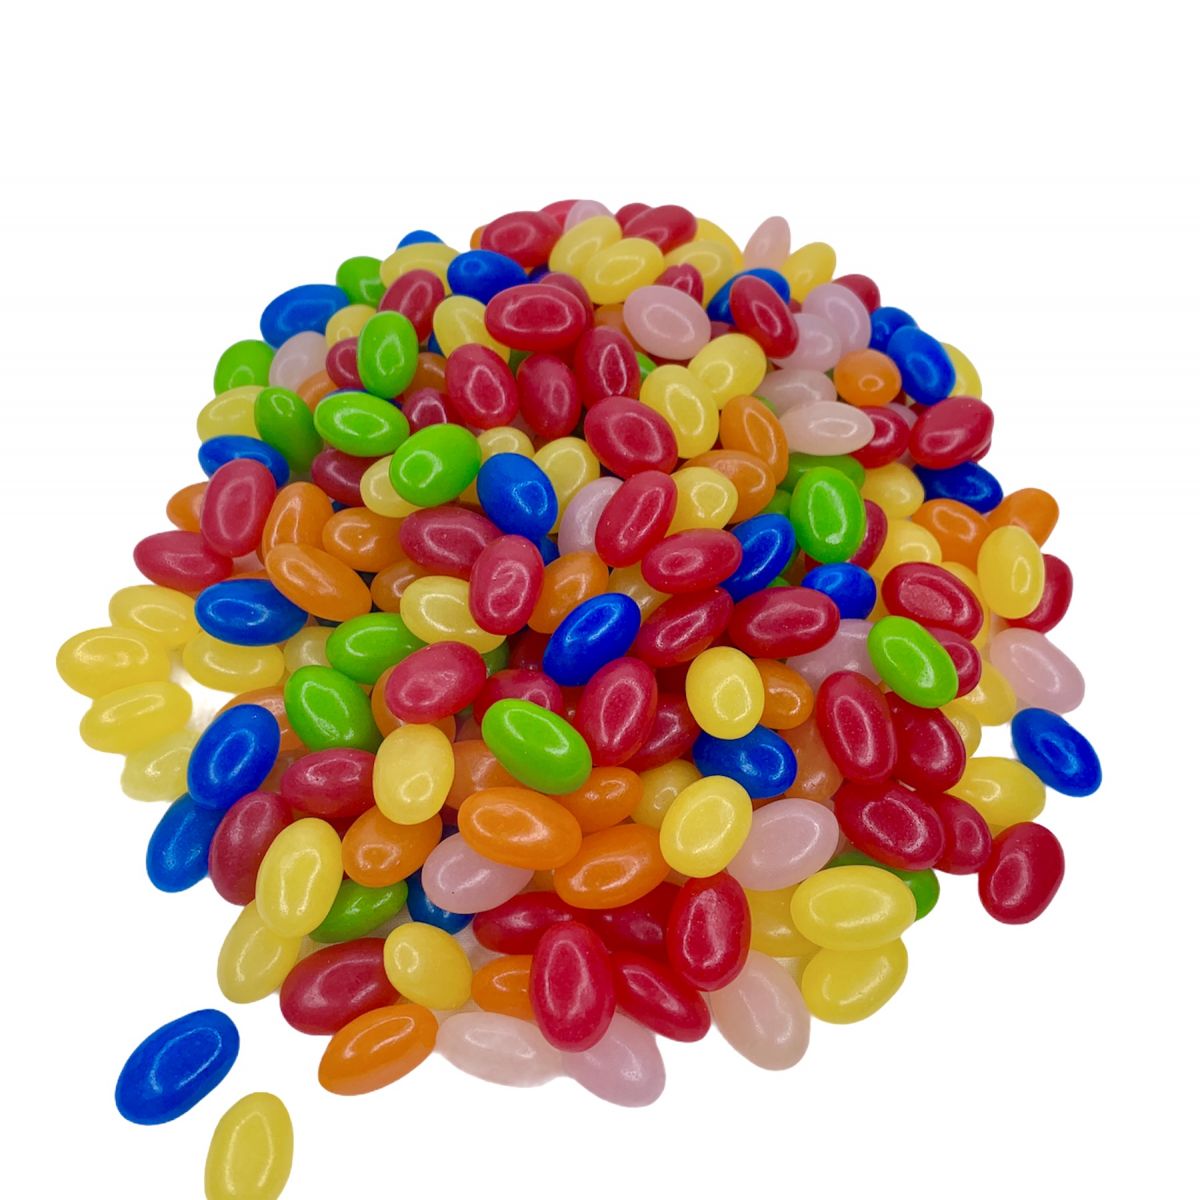 FINI Beans Bonbons colorés sans gluten 180g pas cher 